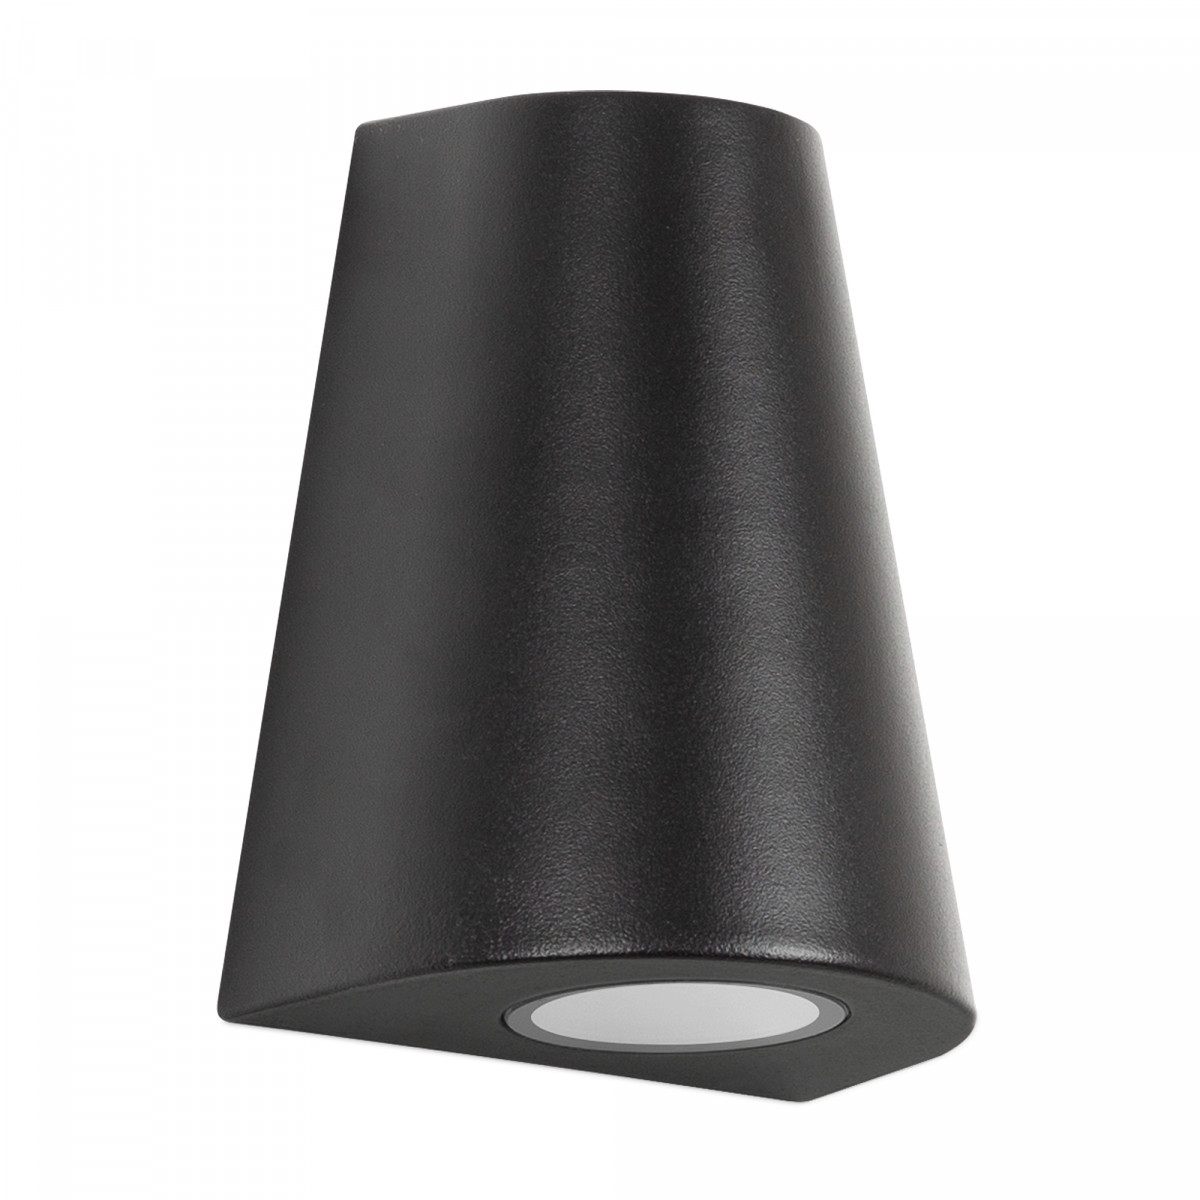 Wandspot Cone downlighter zwart, moderne wandverlichting voor buiten, buitenverlichting van KS Verlichting, conisch vormgegeven gevelspot